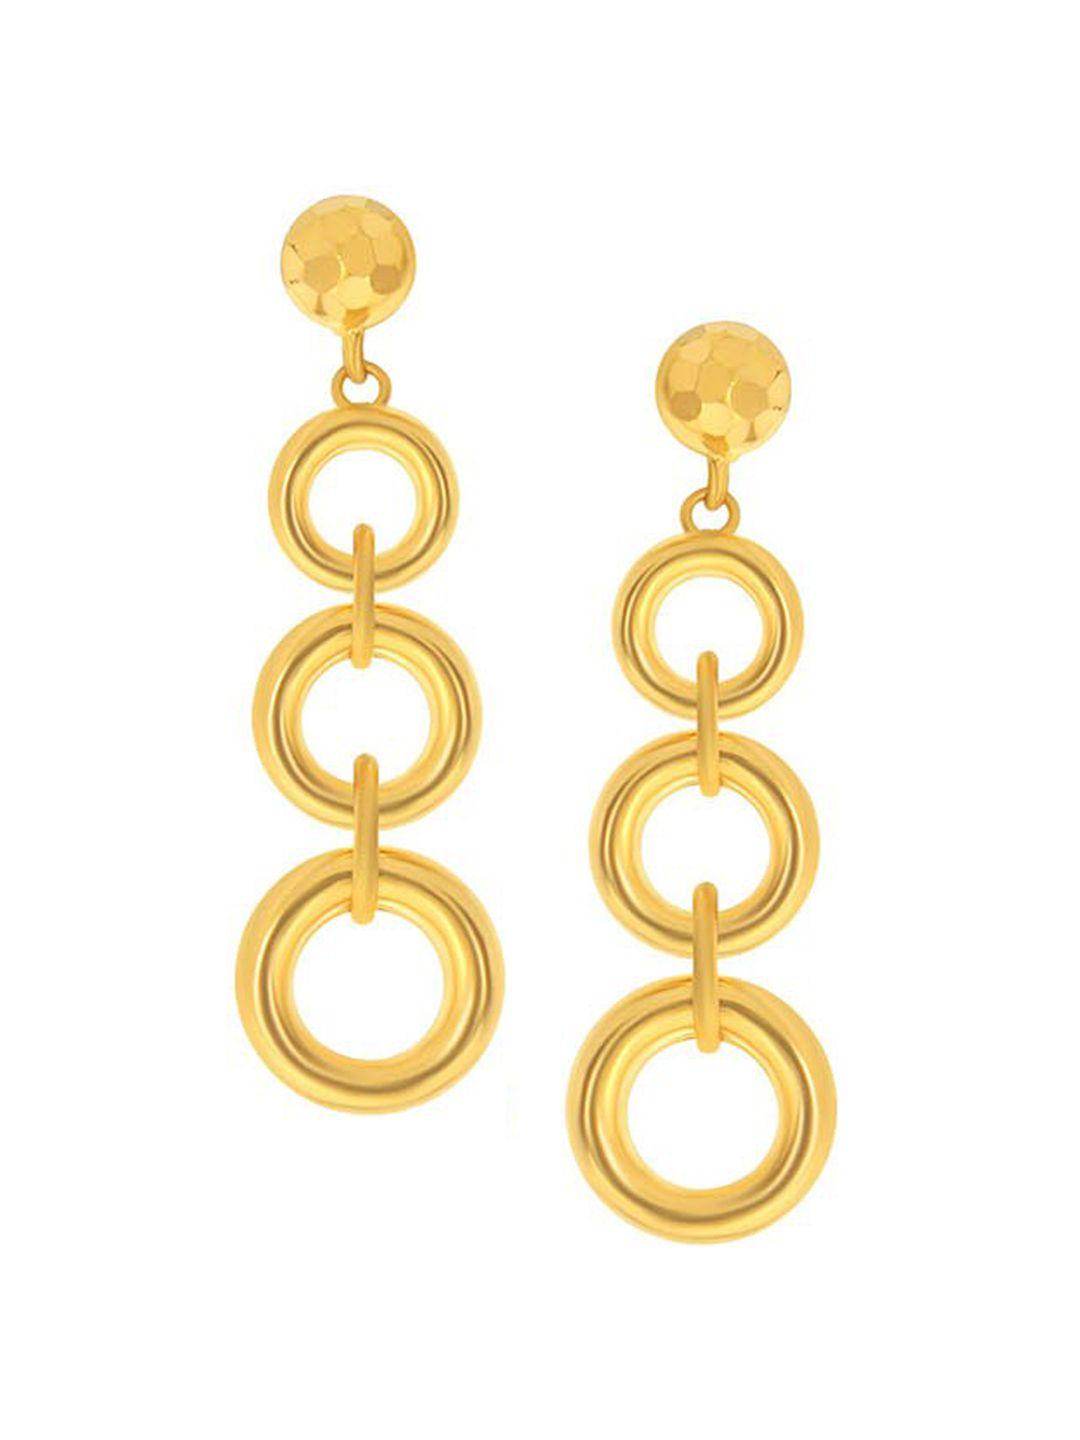 senco halos of beauty 22kt drop gold earrings-4.0gm